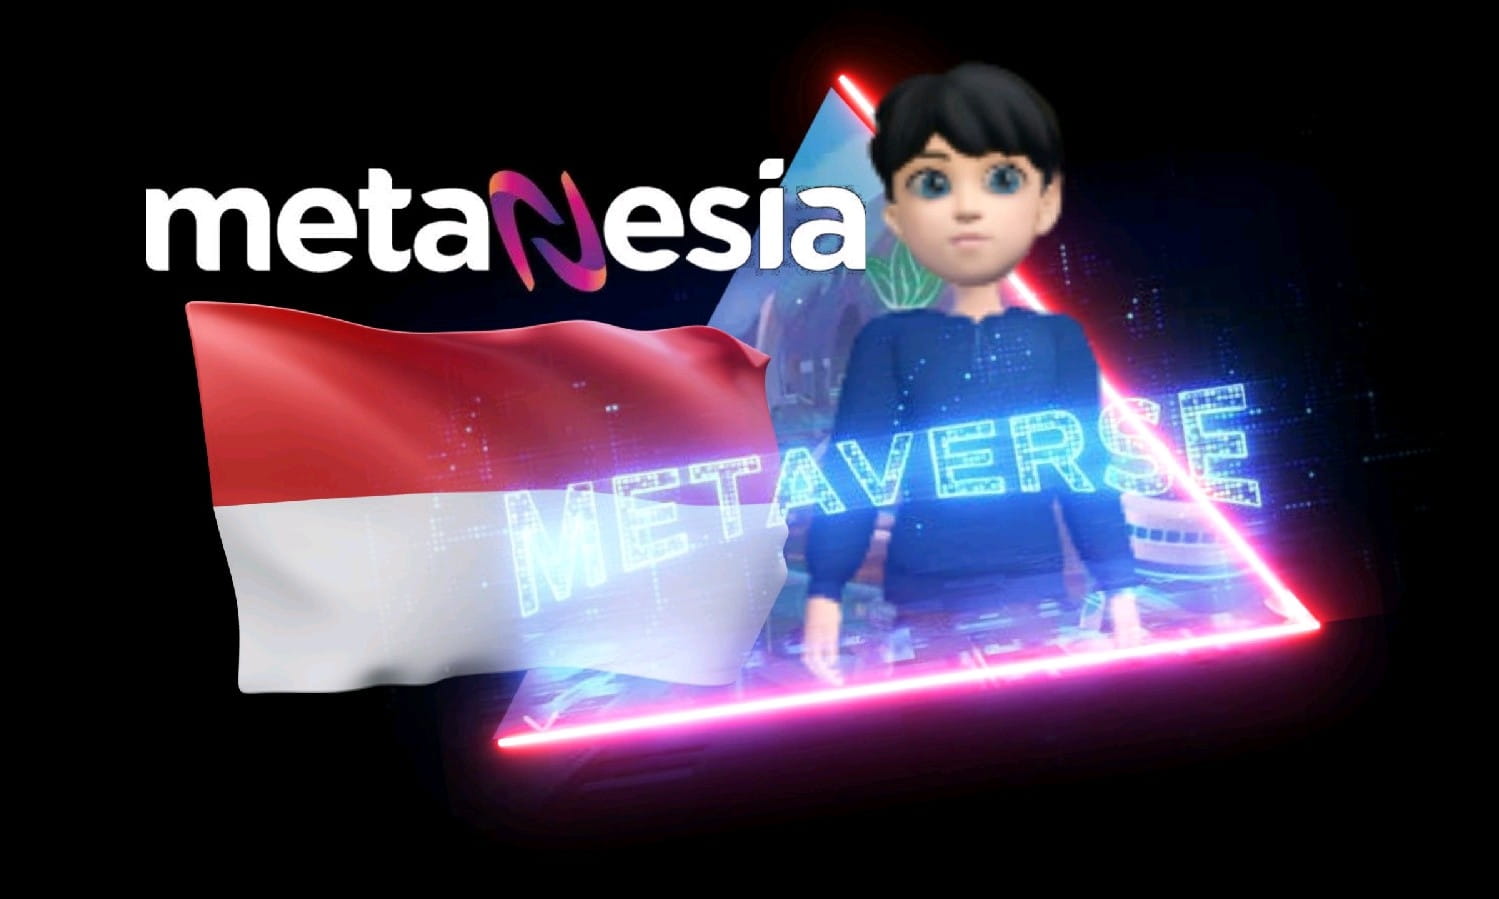 METANESIA | Indonesia Metaverse